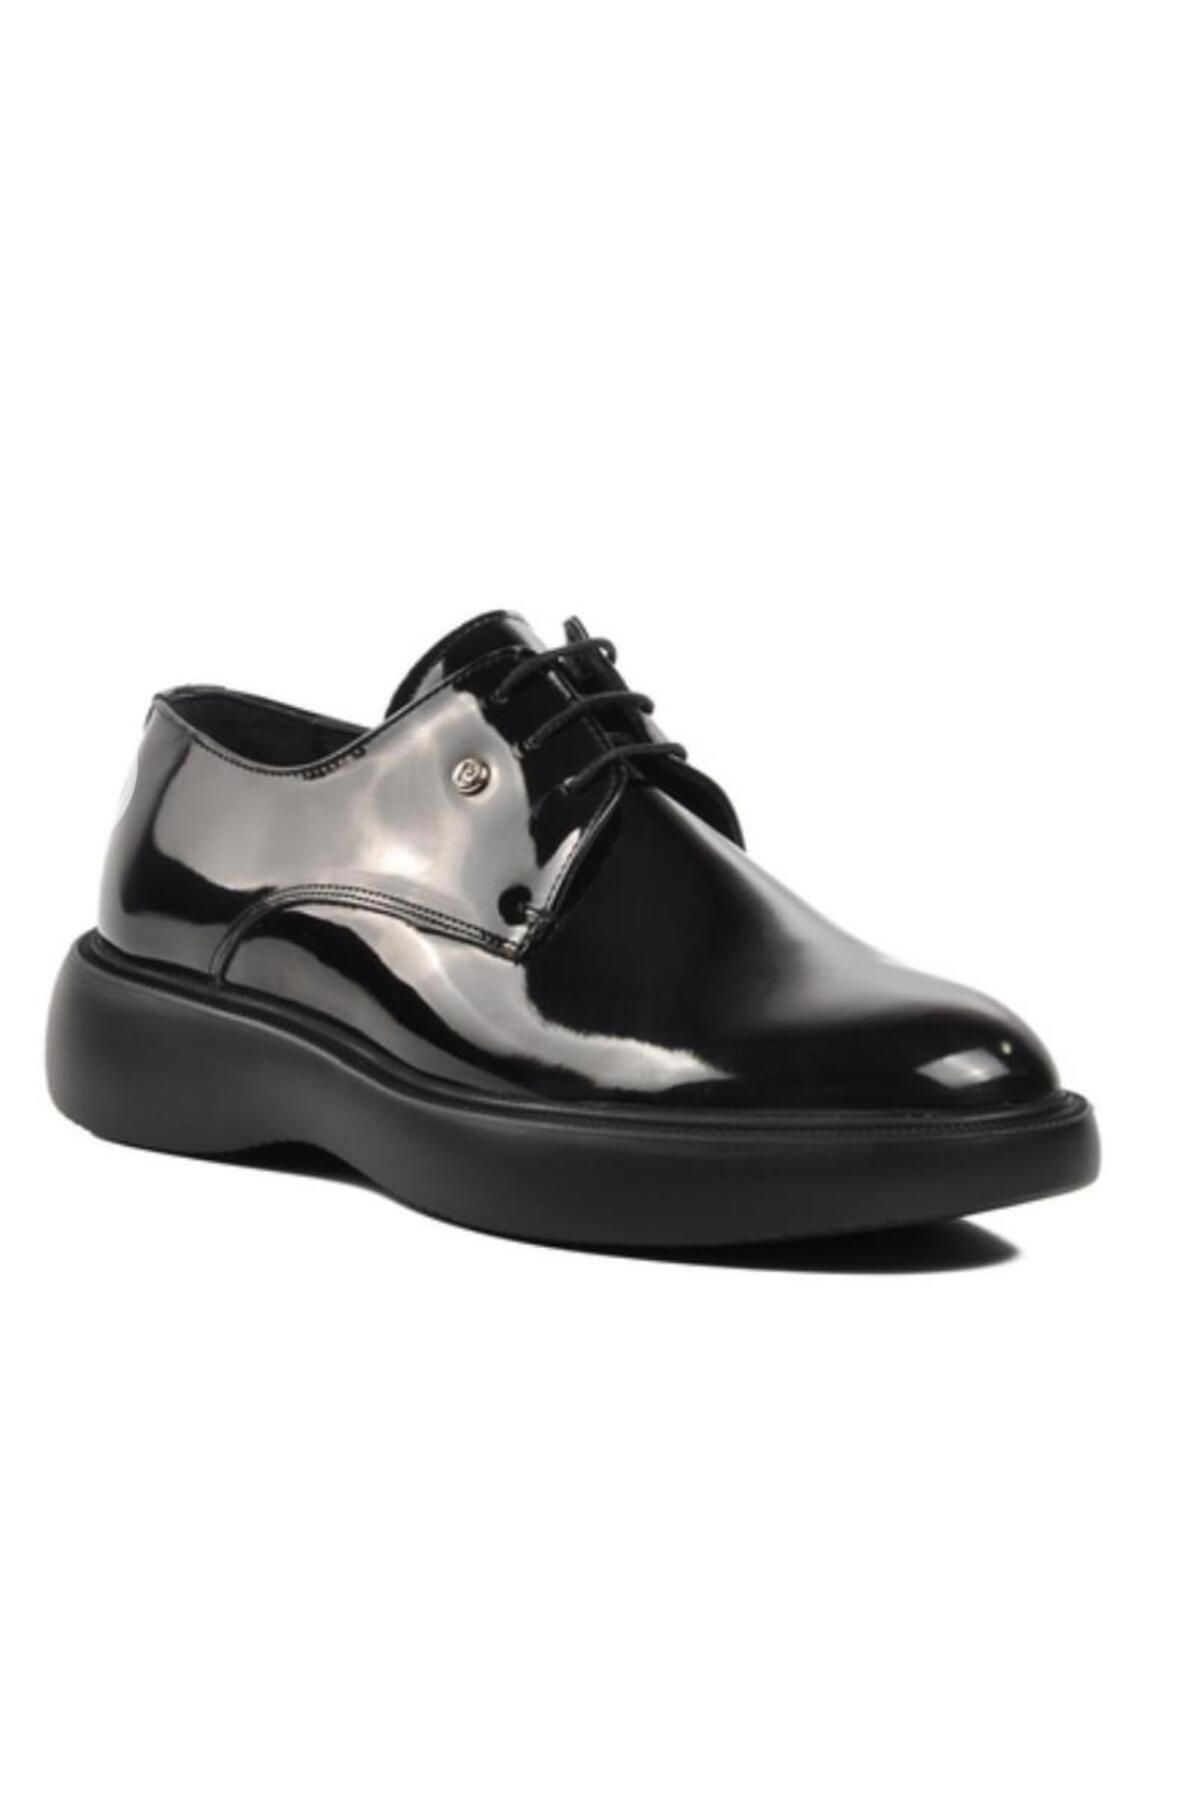 Pierre Cardin Pce-70902 Erkek Yüksek Taban Klasik Rugan Ayakkabı